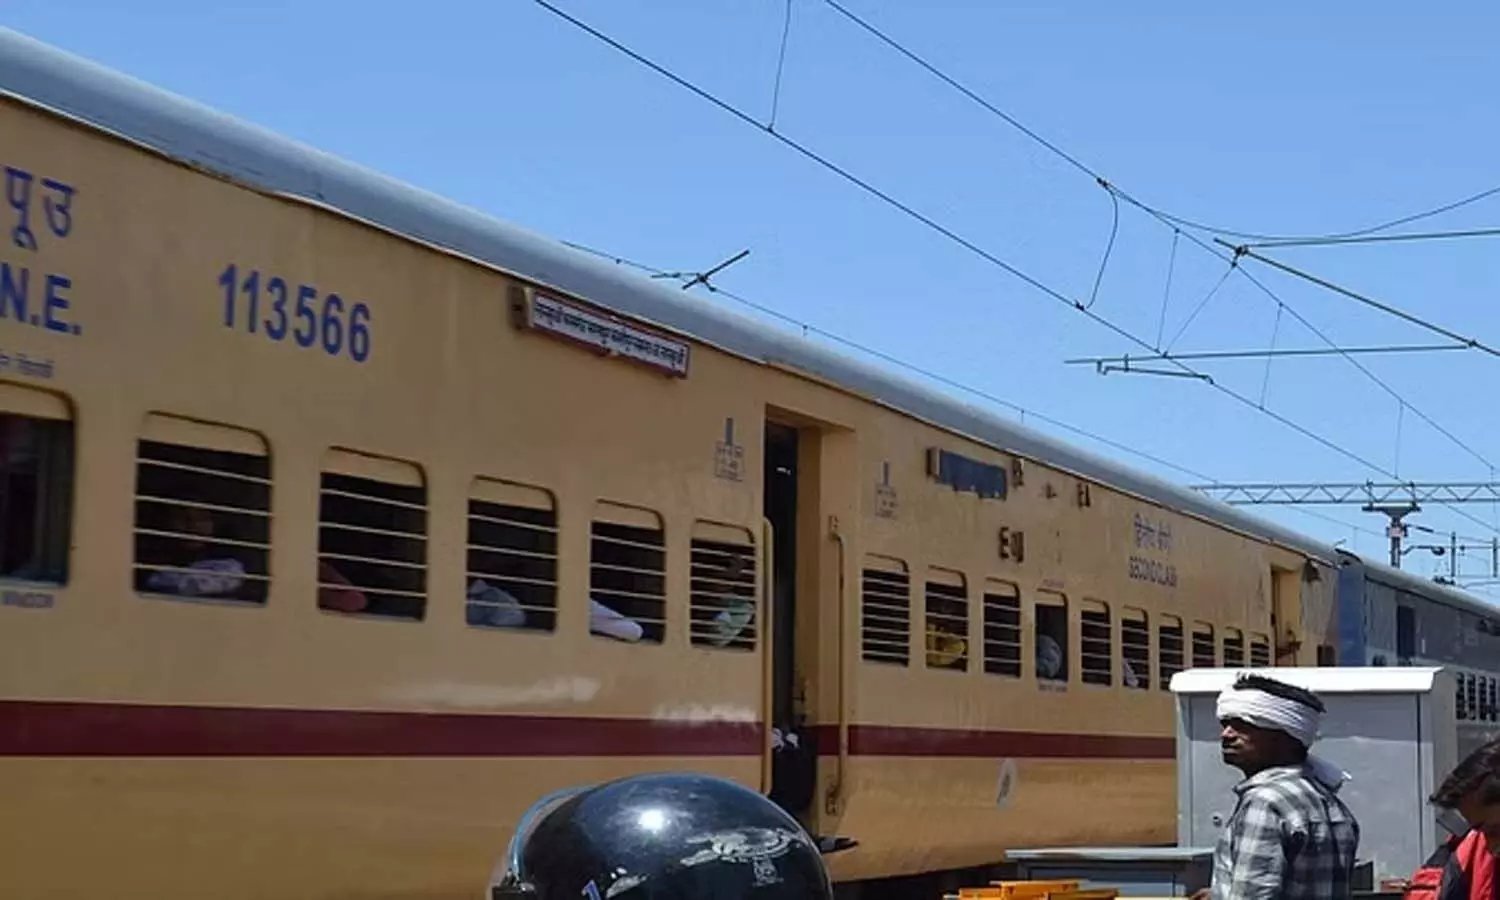 Railway News: धौलपुर-मुरैना के बीच मिट्टी बह जाने से रेलवे ट्रैक धंसा, कई ट्रेनें प्रभावित